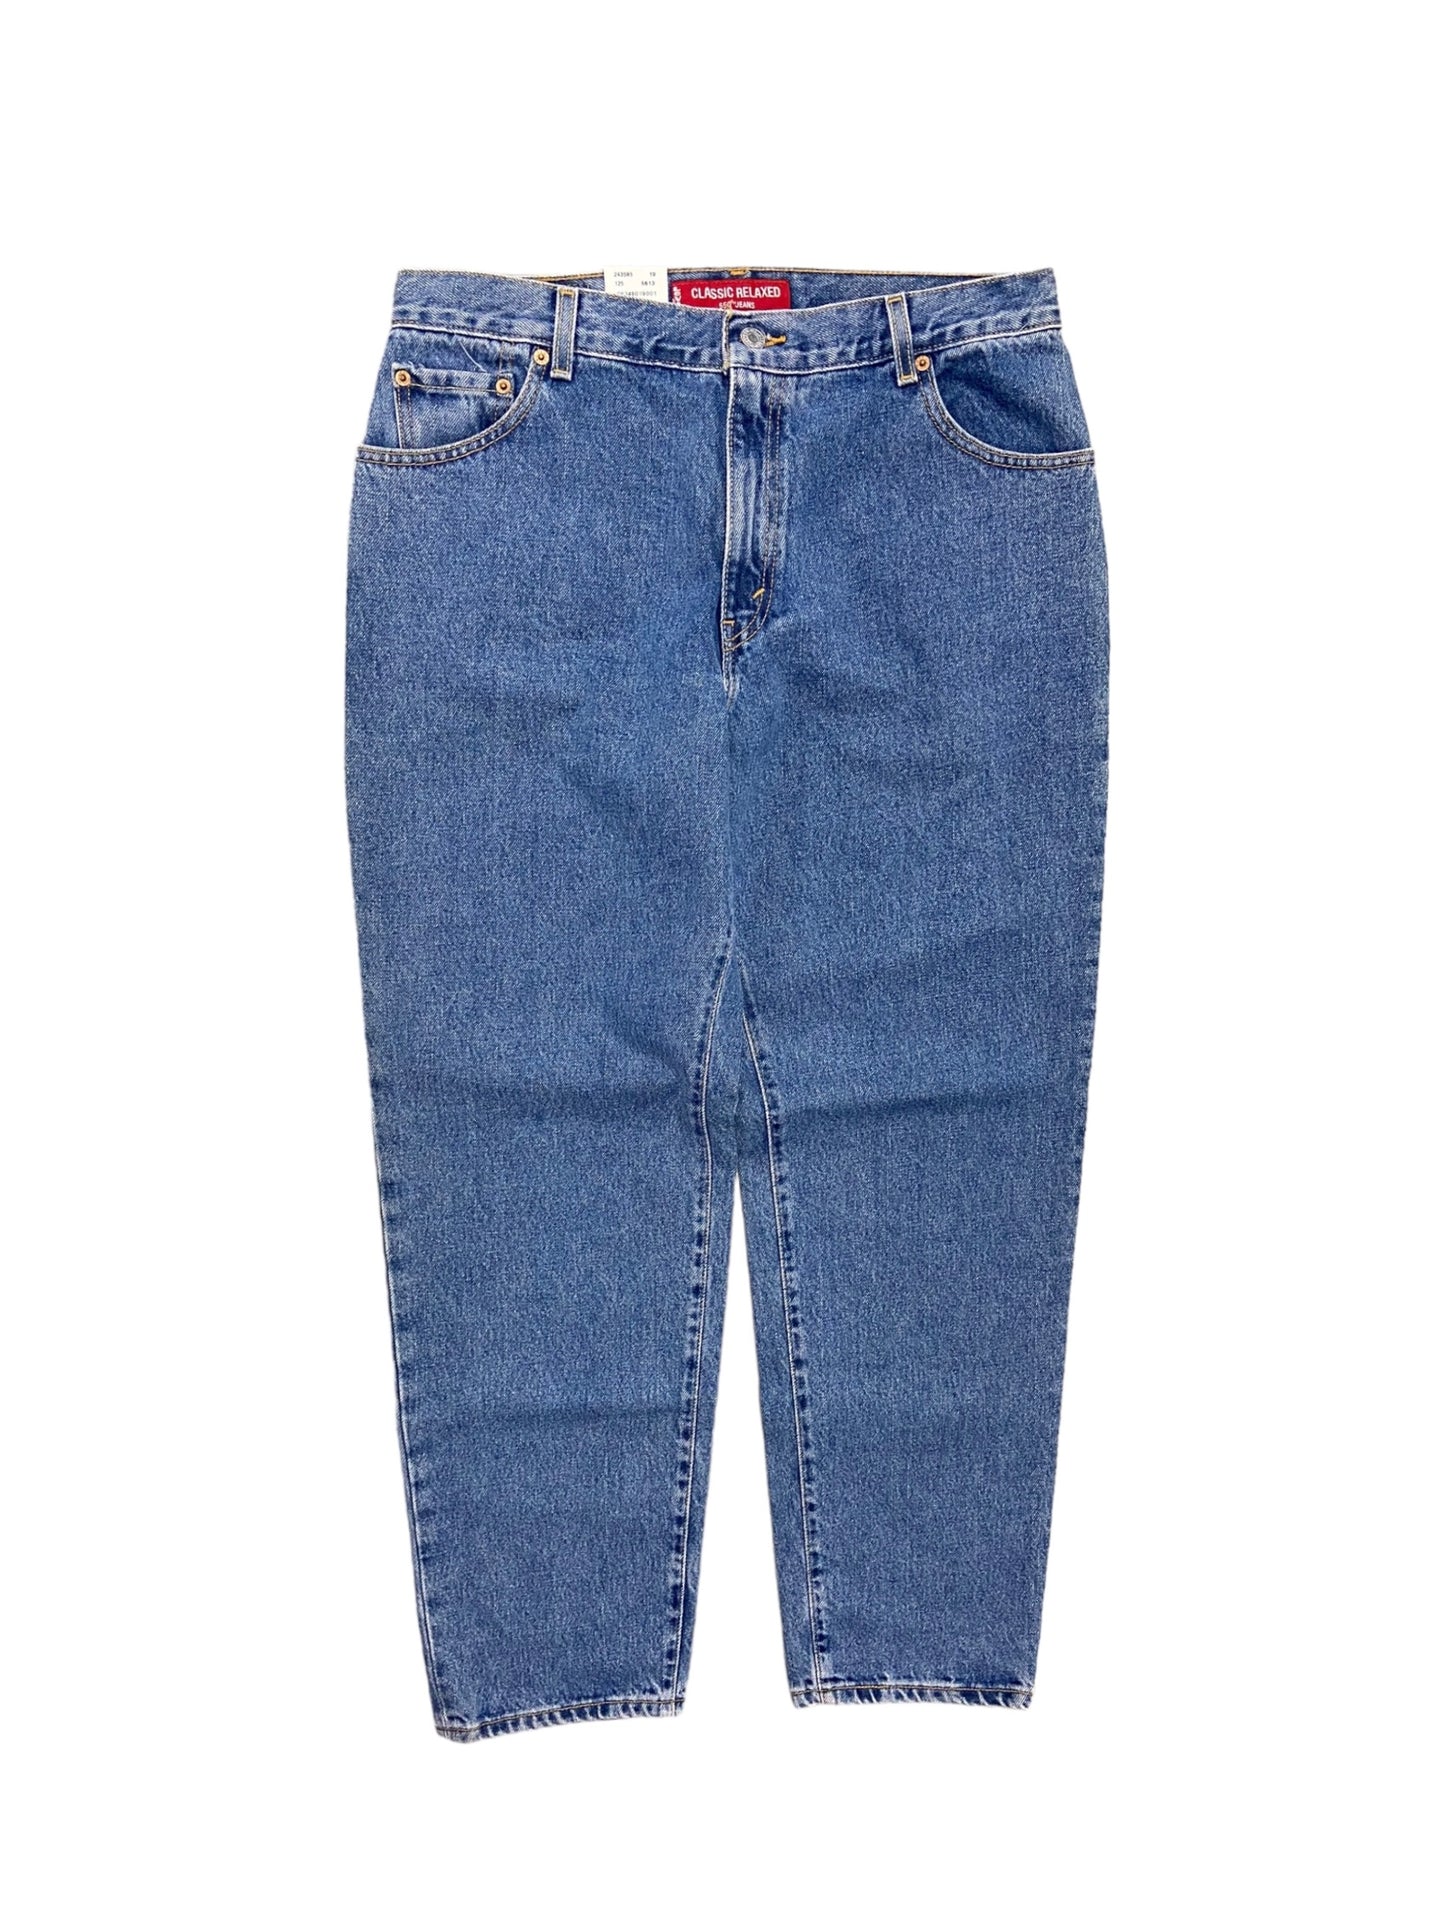 VTG Levi's Wmns 550 Deadstock Blue Denim Jeans Sz 32x31